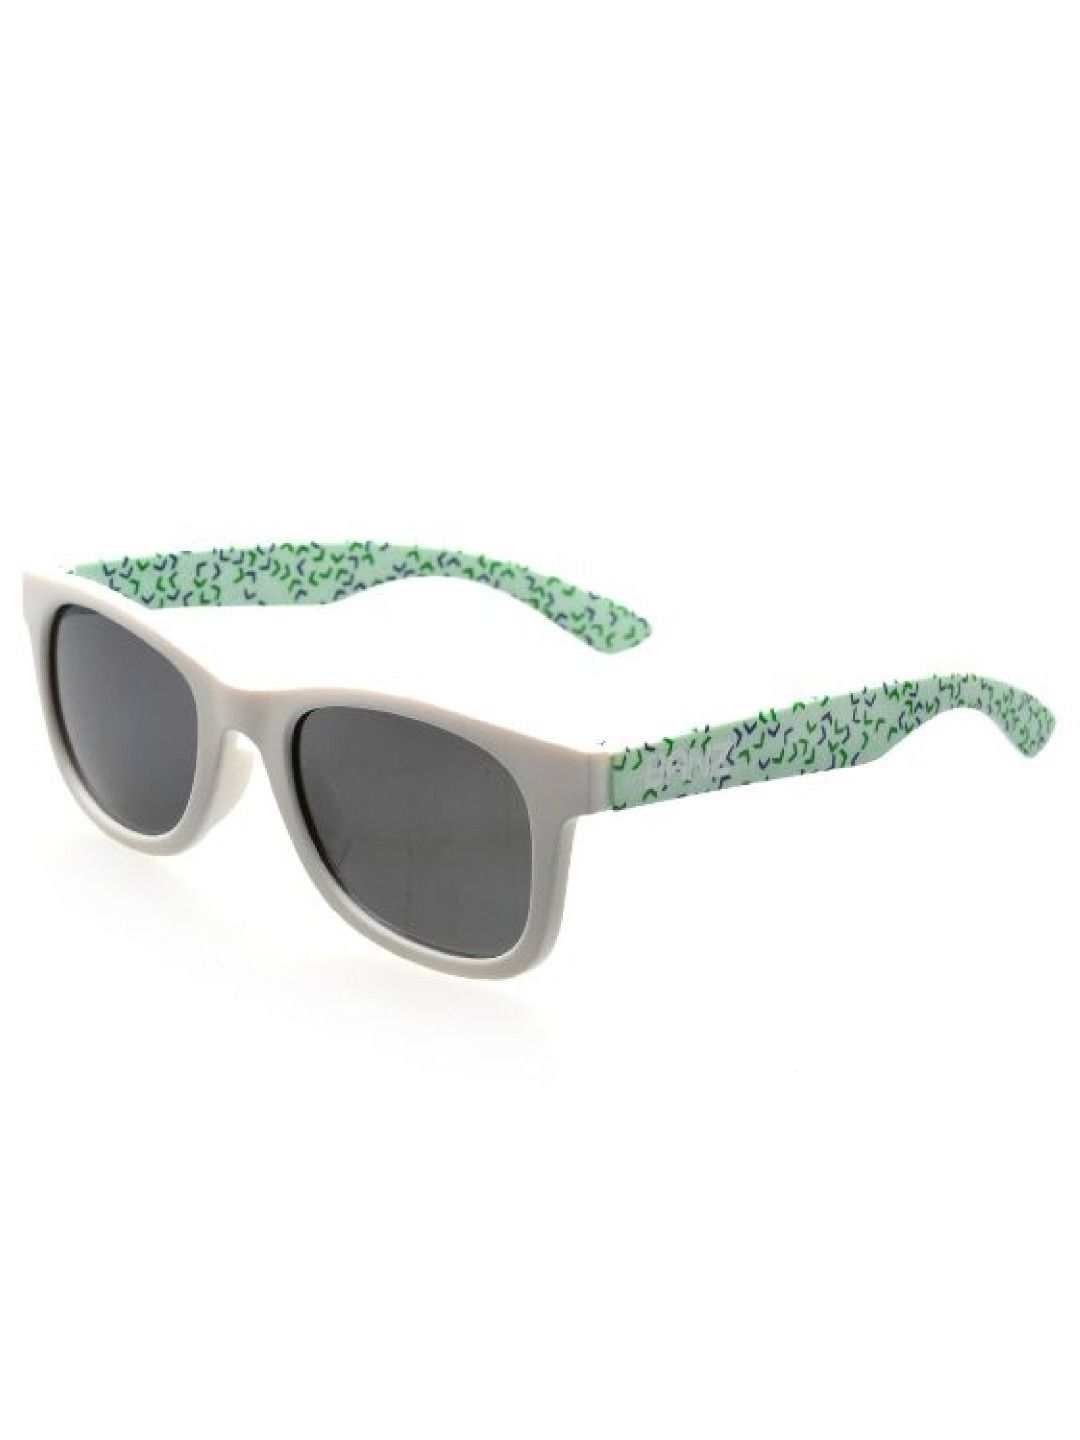 Banz Beachcomber Sunglasses